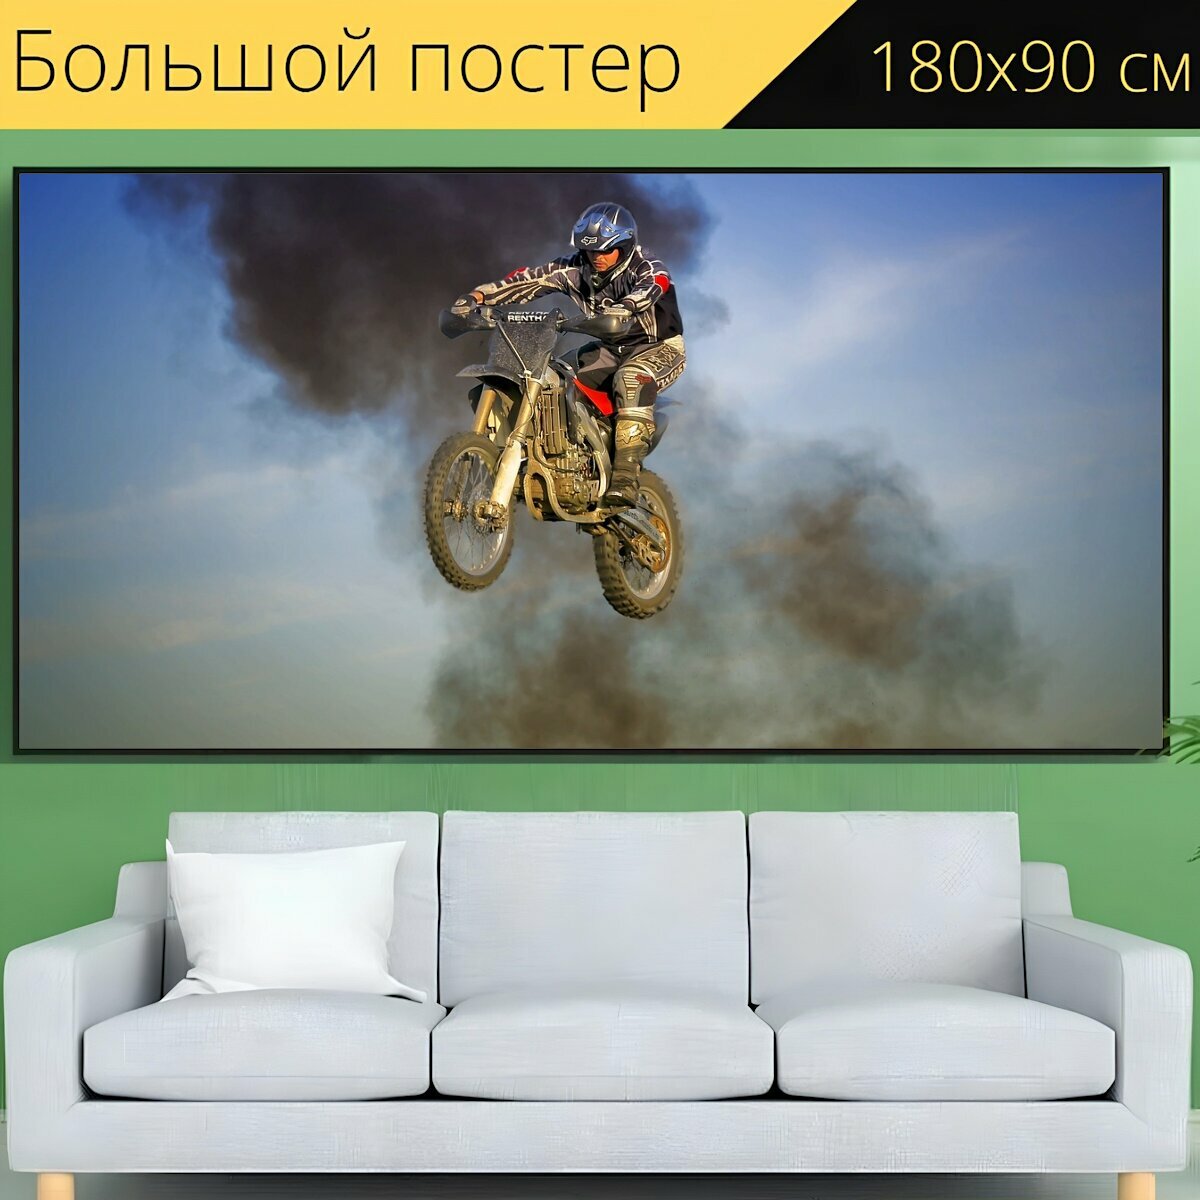 Большой постер "Каскадер, велосипед грязи, мотокросс" 180 x 90 см. для интерьера